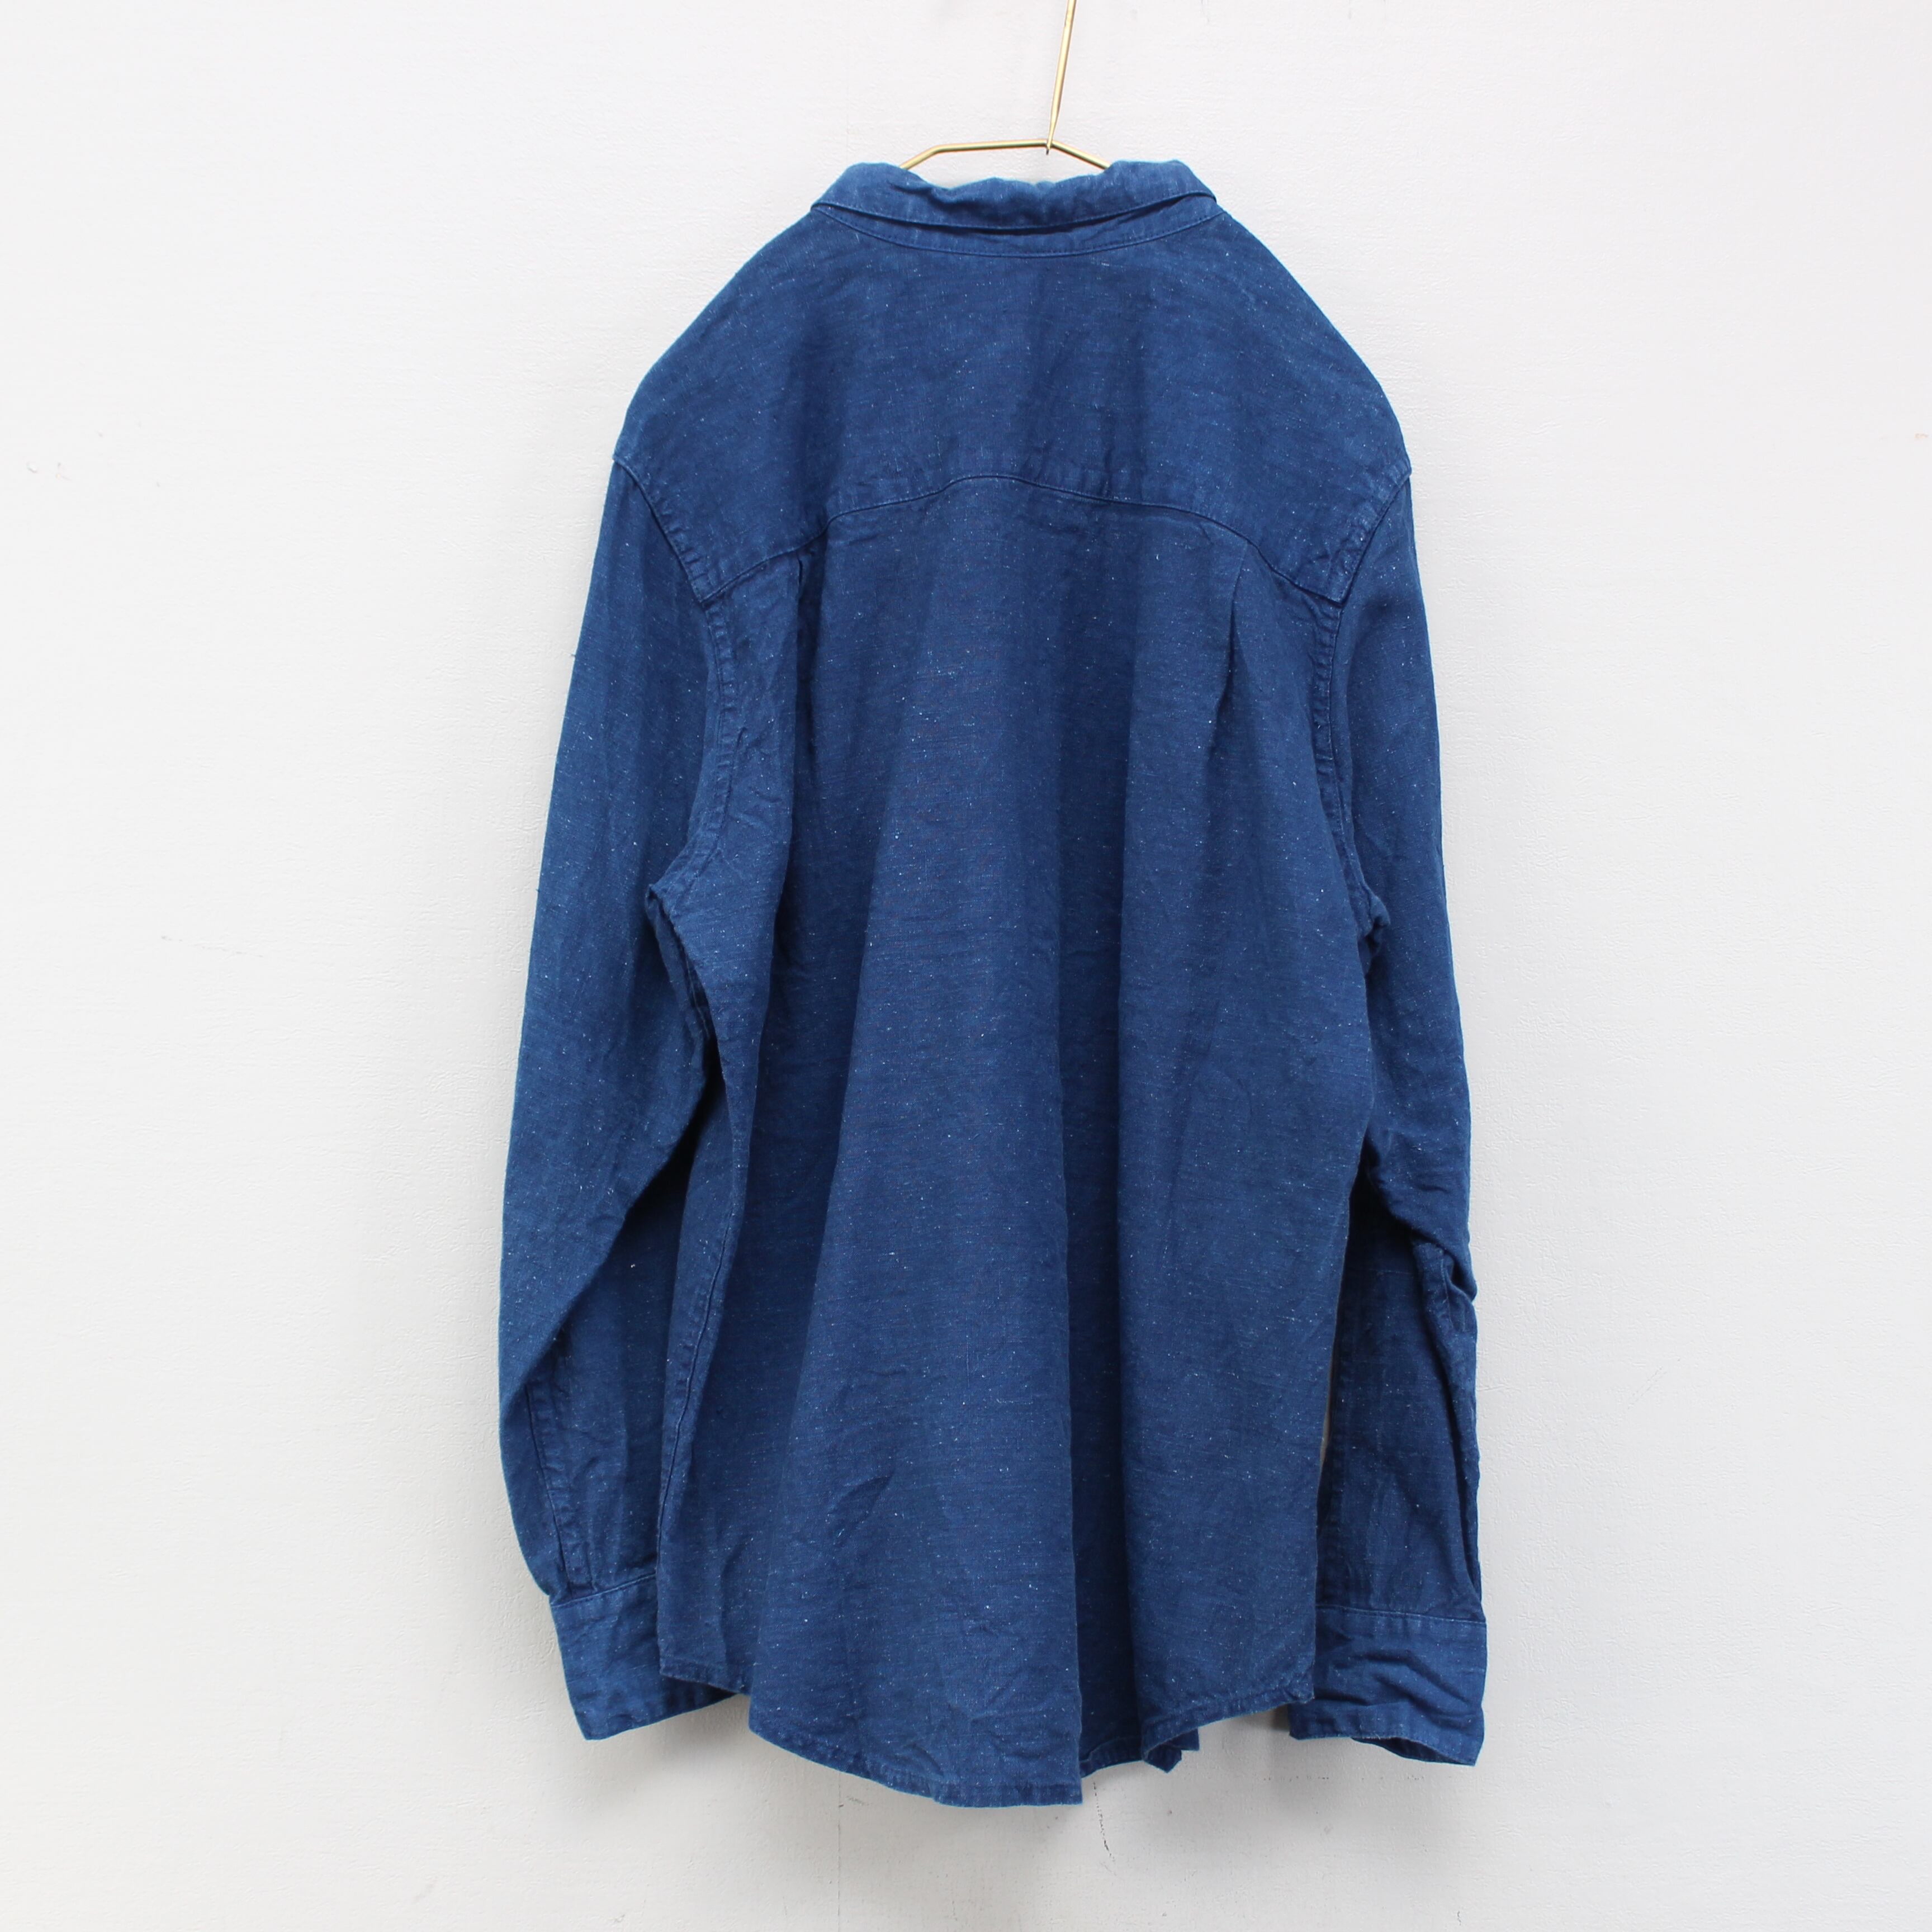 フランスアンティークリネンリメイクオーバーダイデザインシャツ(藍染)(メンズ)